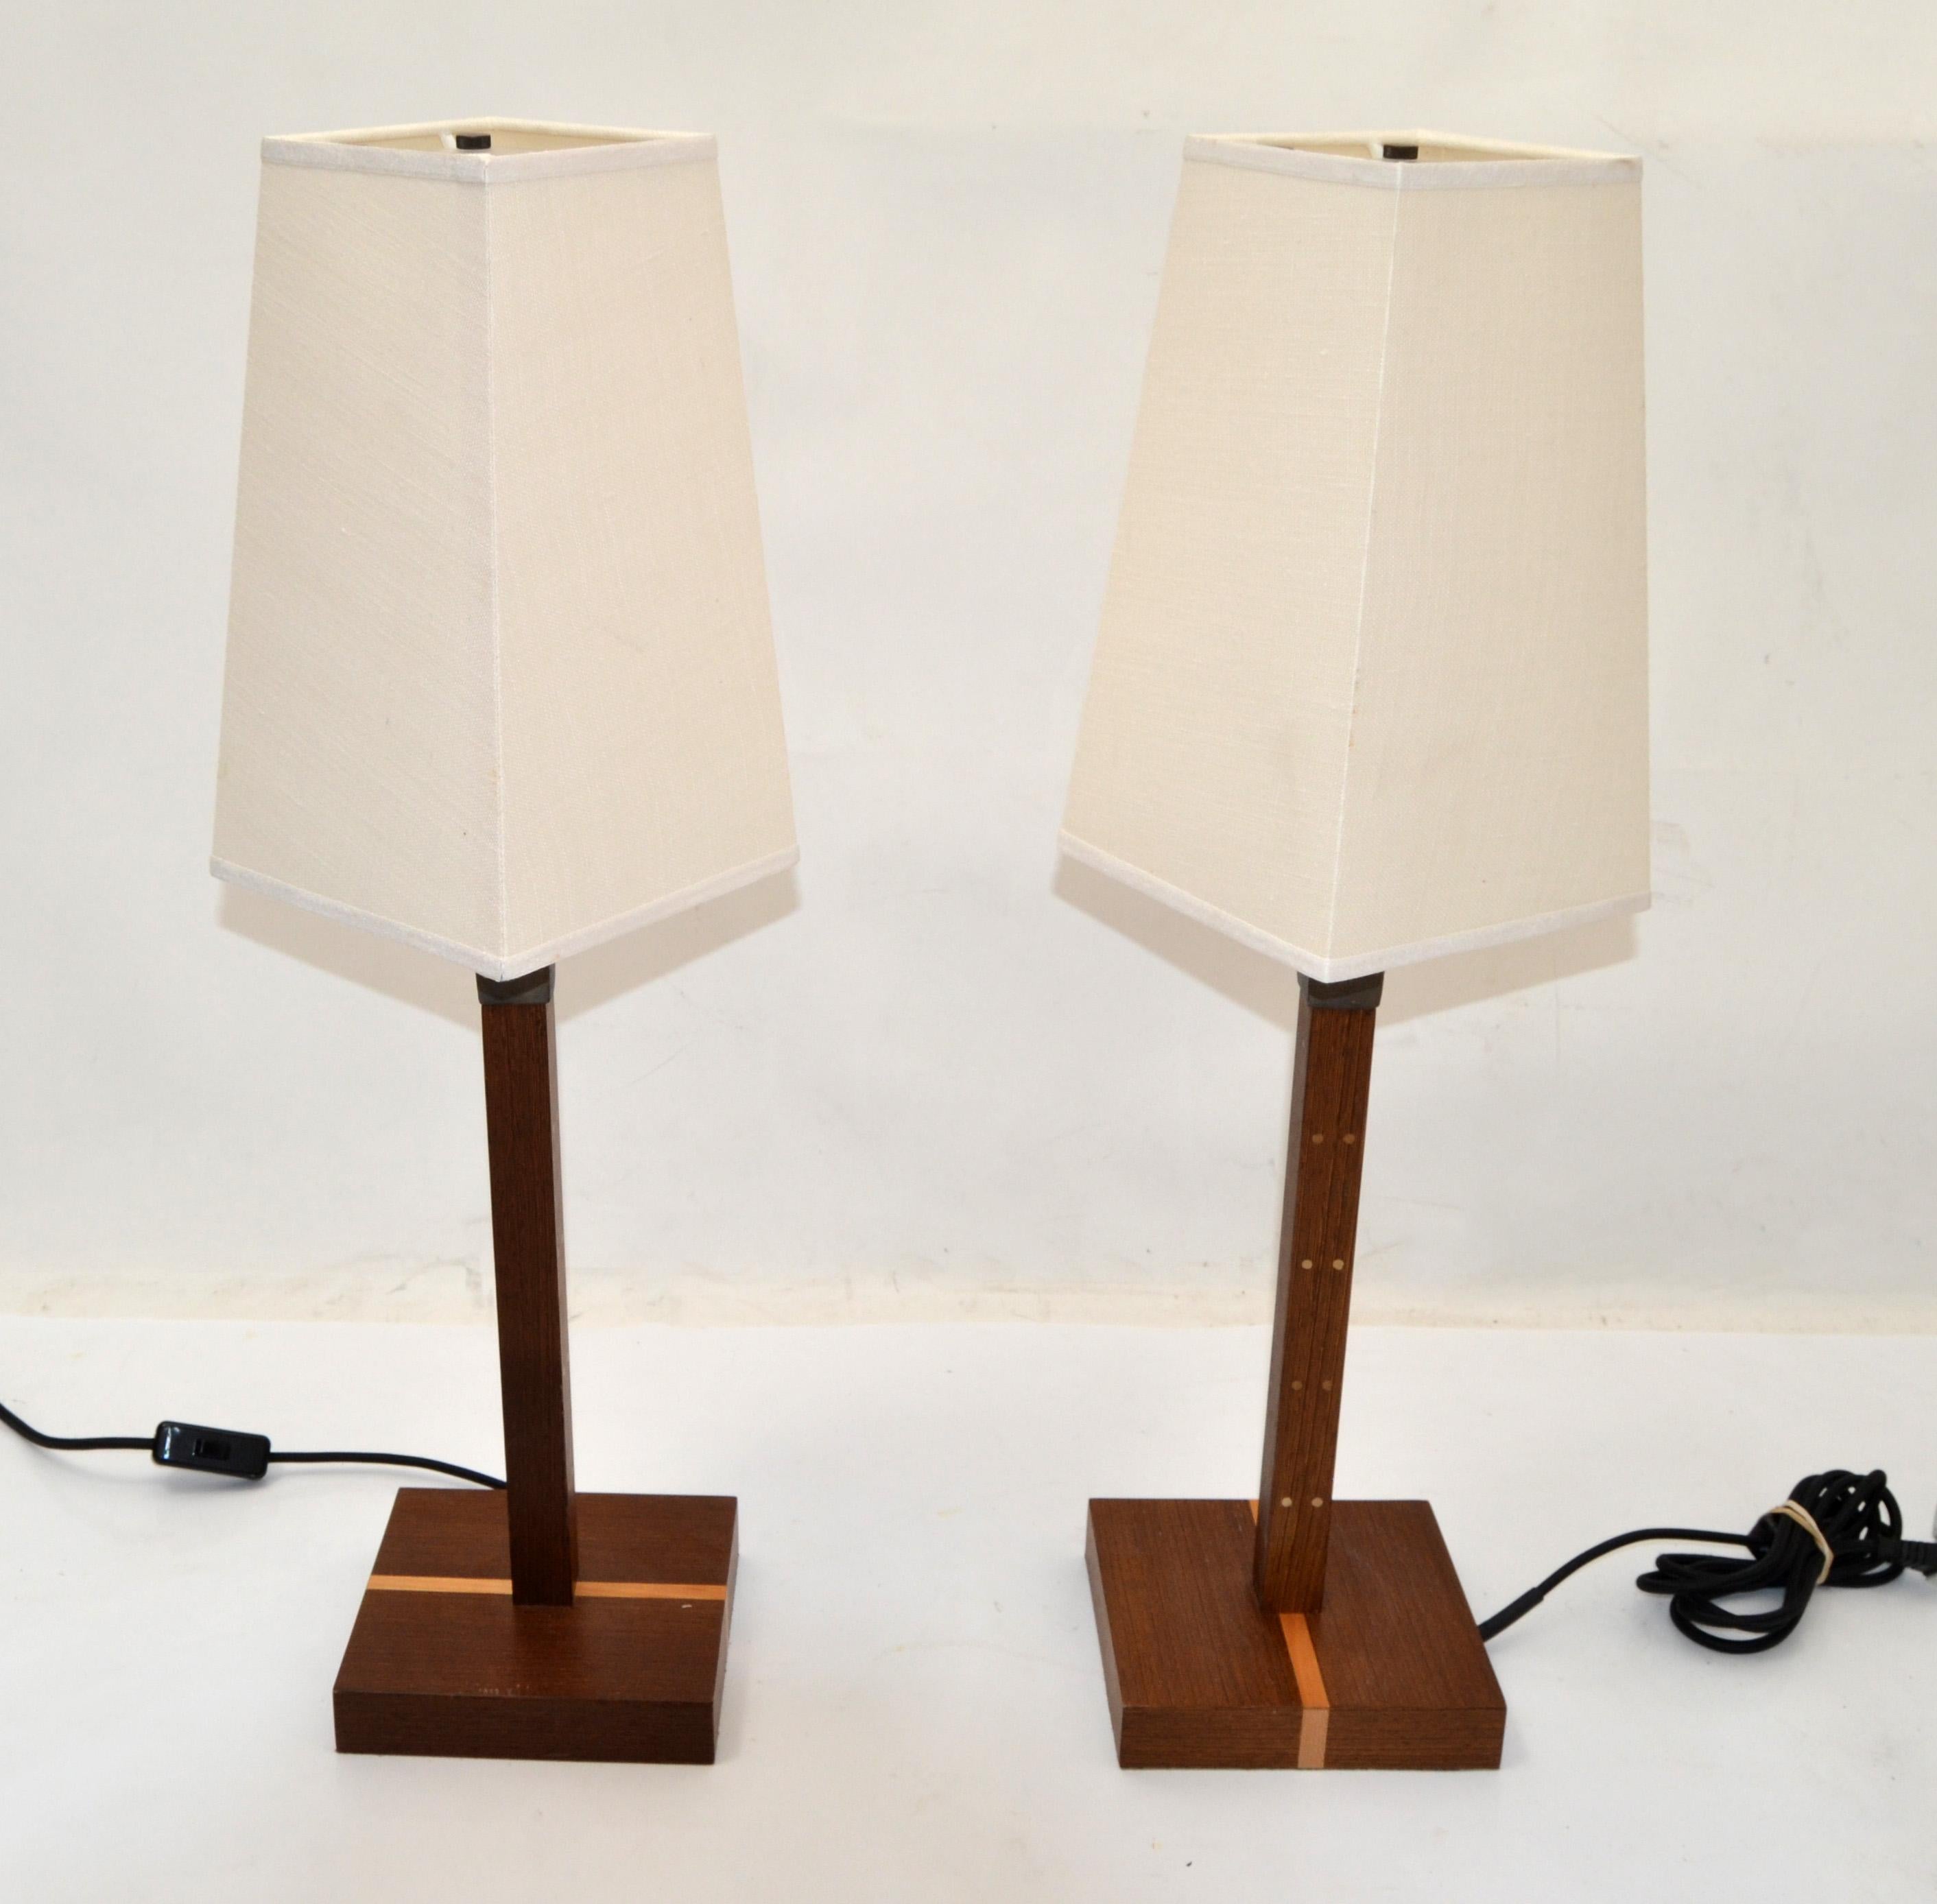 Paire de lampes Ida conçues par Romeo Sozzi vers 1990 pour Promemoria, fabriquées en Italie.
Design moderne du milieu du siècle, fabriqué en bois de wengé, bronze martelé, acrylique et couronné d'un abat-jour en lin.
Recâblage américain avec